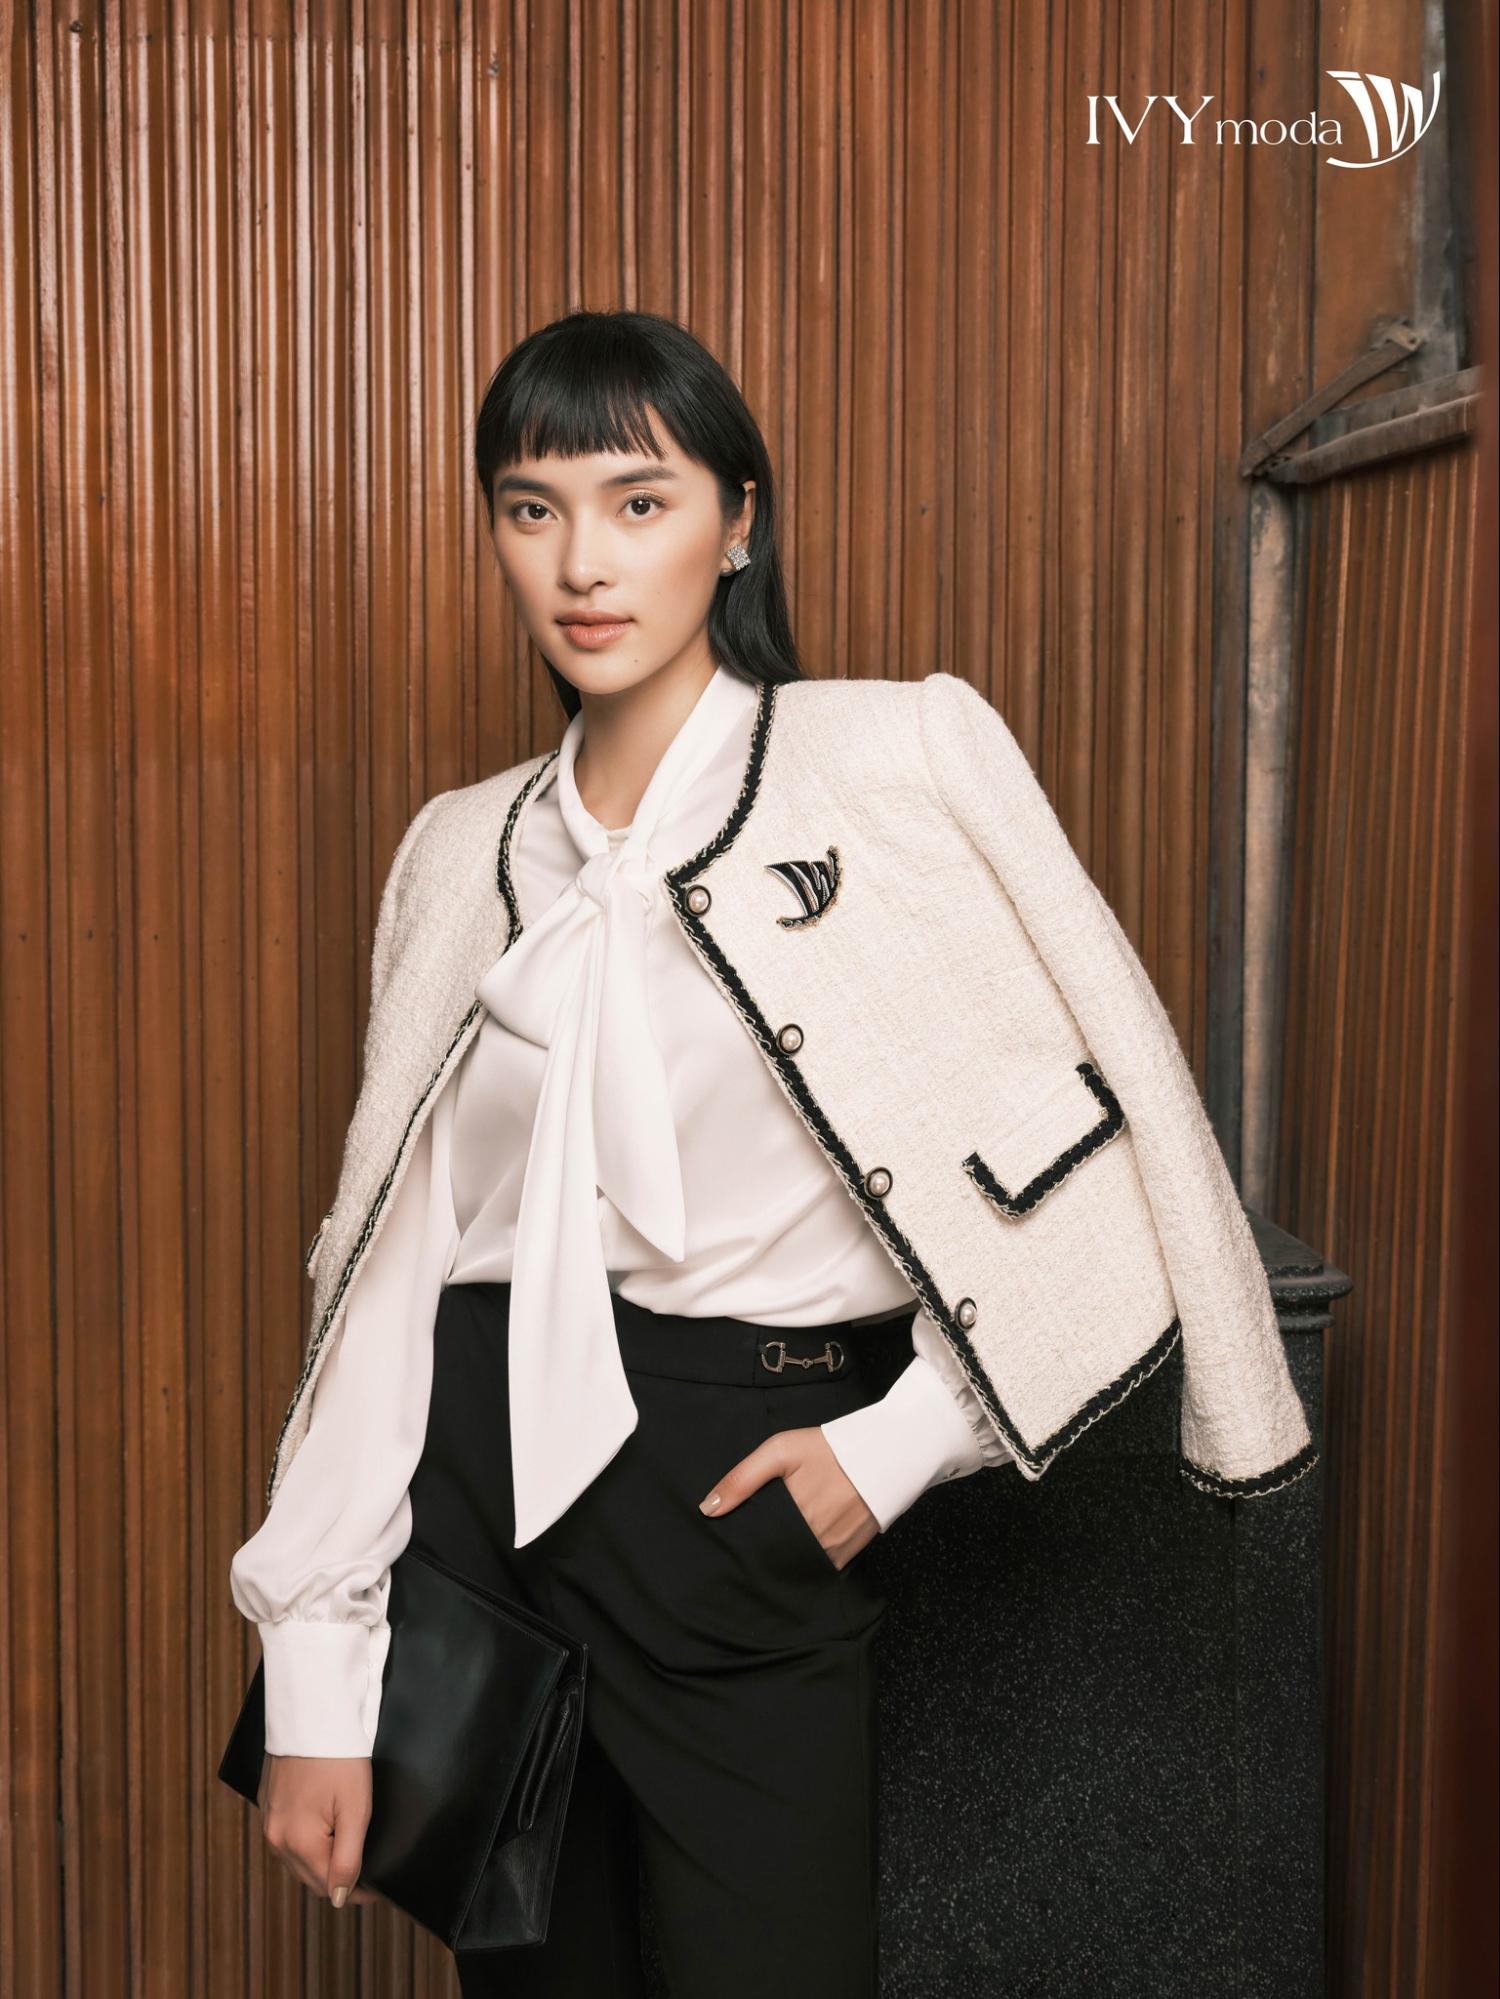 Ivy Moda là thương hiệu thời trang công sở cao cấp hàng đầu Việt Nam